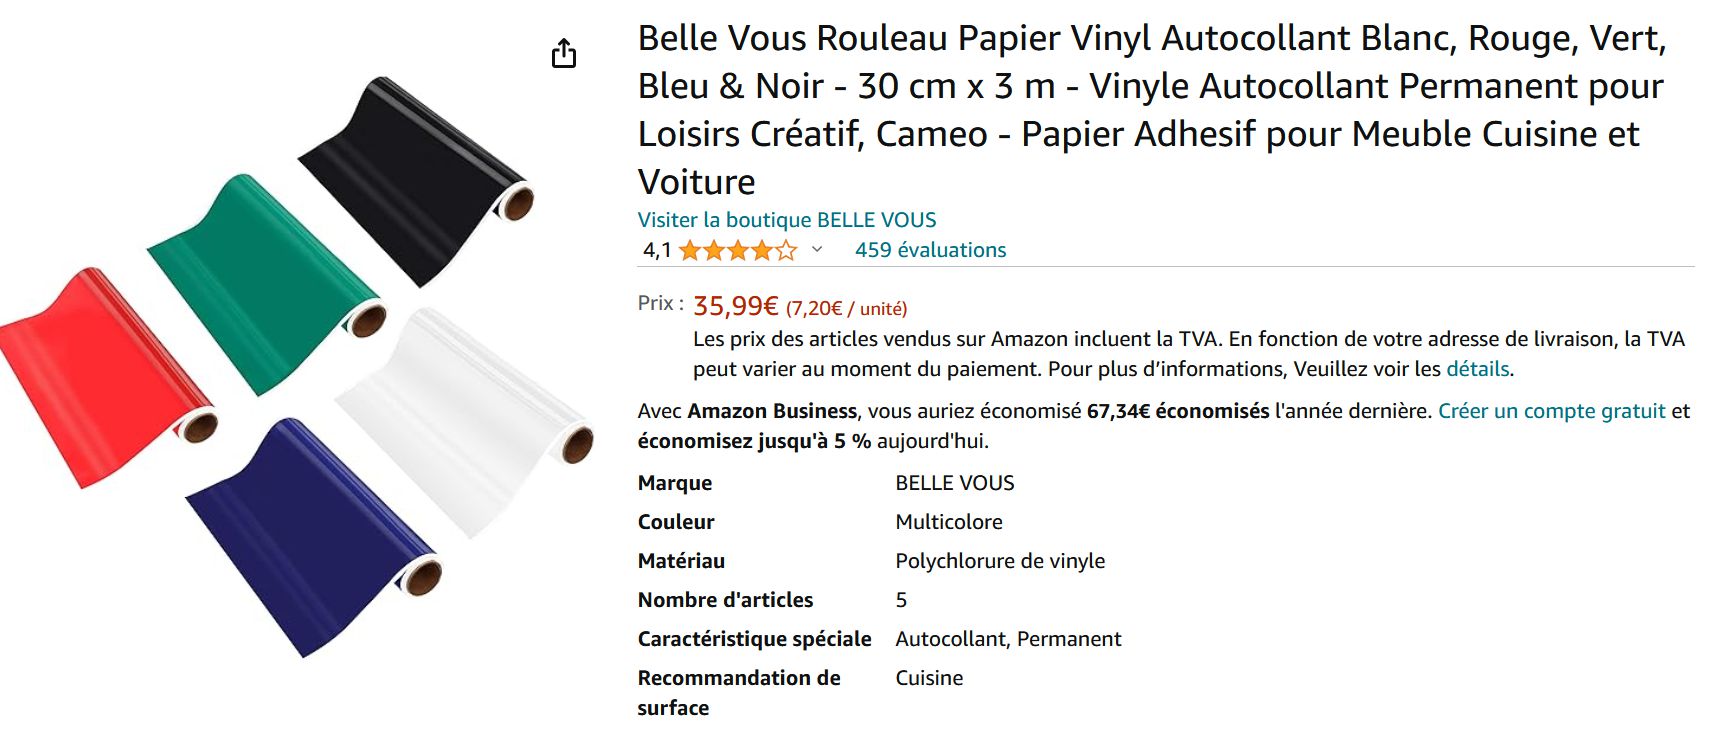 Belle Vous Rouleau Papier Vinyl Autocollant Blanc, Rouge, Vert, Bleu & Noir  - 30 cm x 3 m - Vinyle Autocollant Permanent pour Loisirs Créatif, Cameo -  Papier Adhesif pour Meuble Cuisine